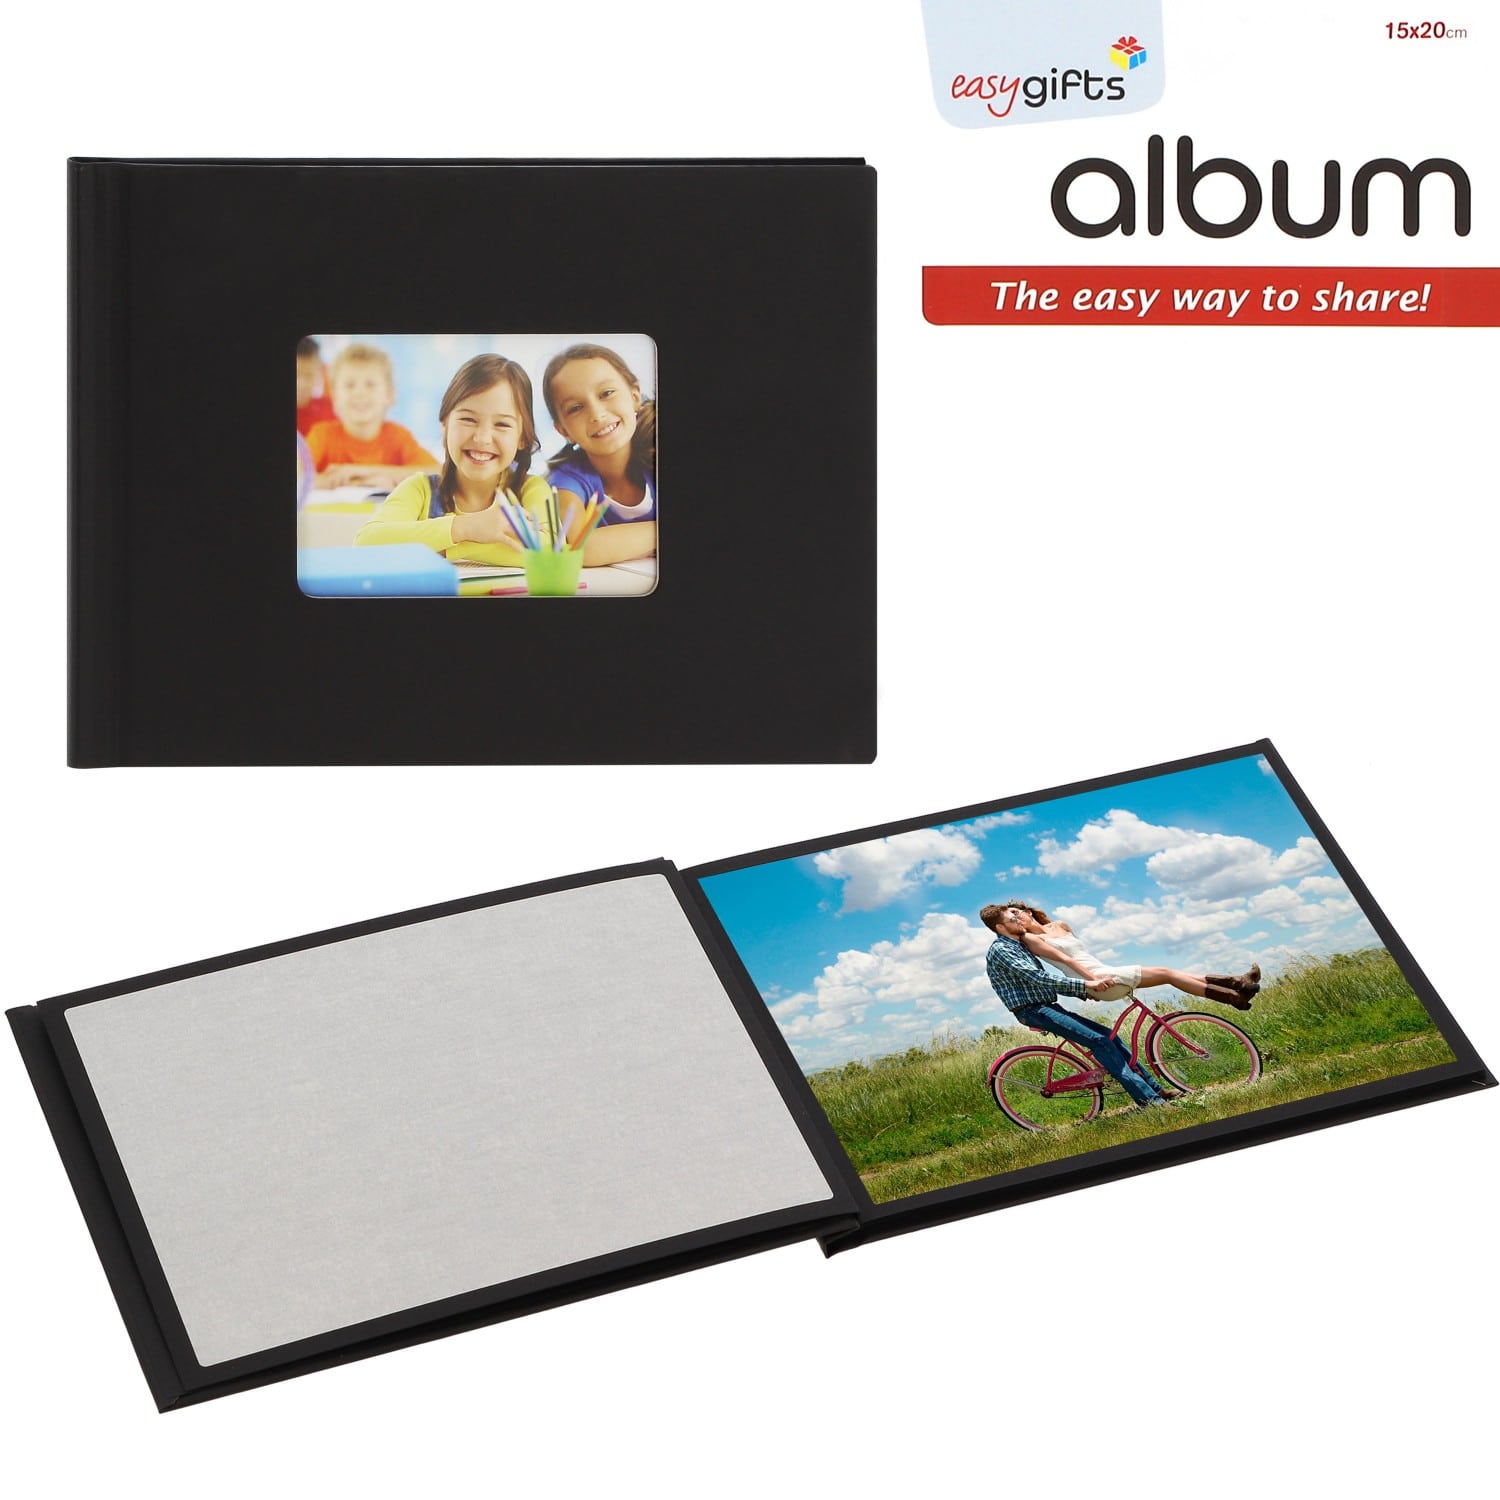 Mini album I GIFTS adhésif EASYALBUM - 12 pages noires - 12 photos 15x20cm  - Couverture Noire 23x17cm + fenêtre